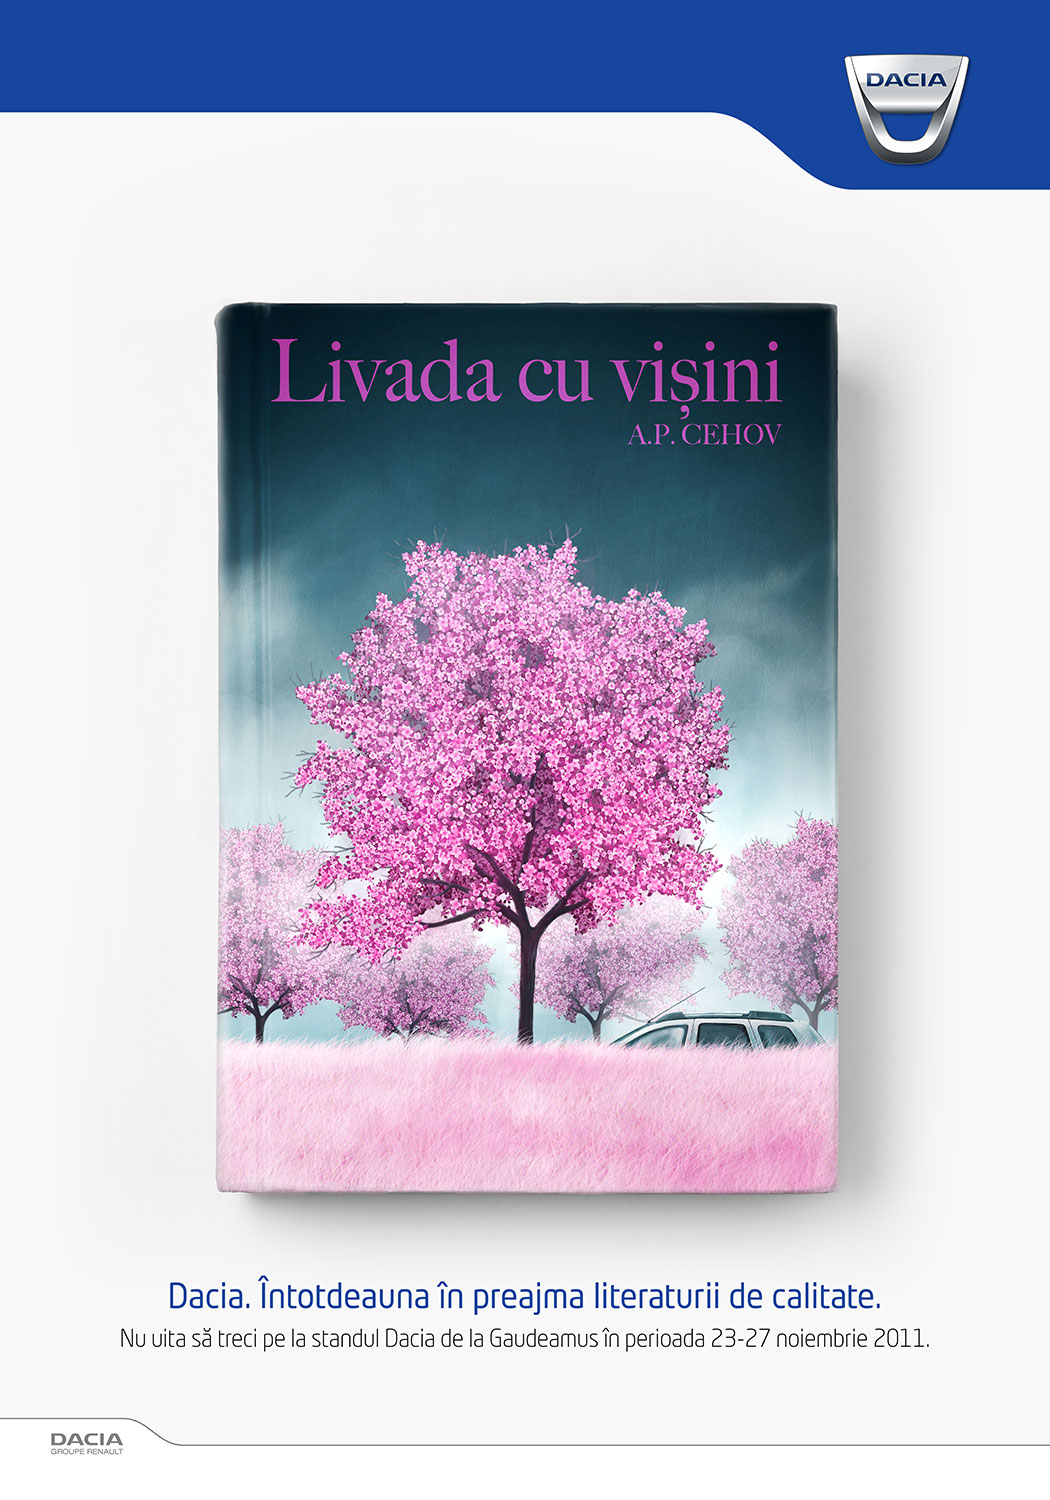  client: Dacia  agency: PUBLICIS Romania 